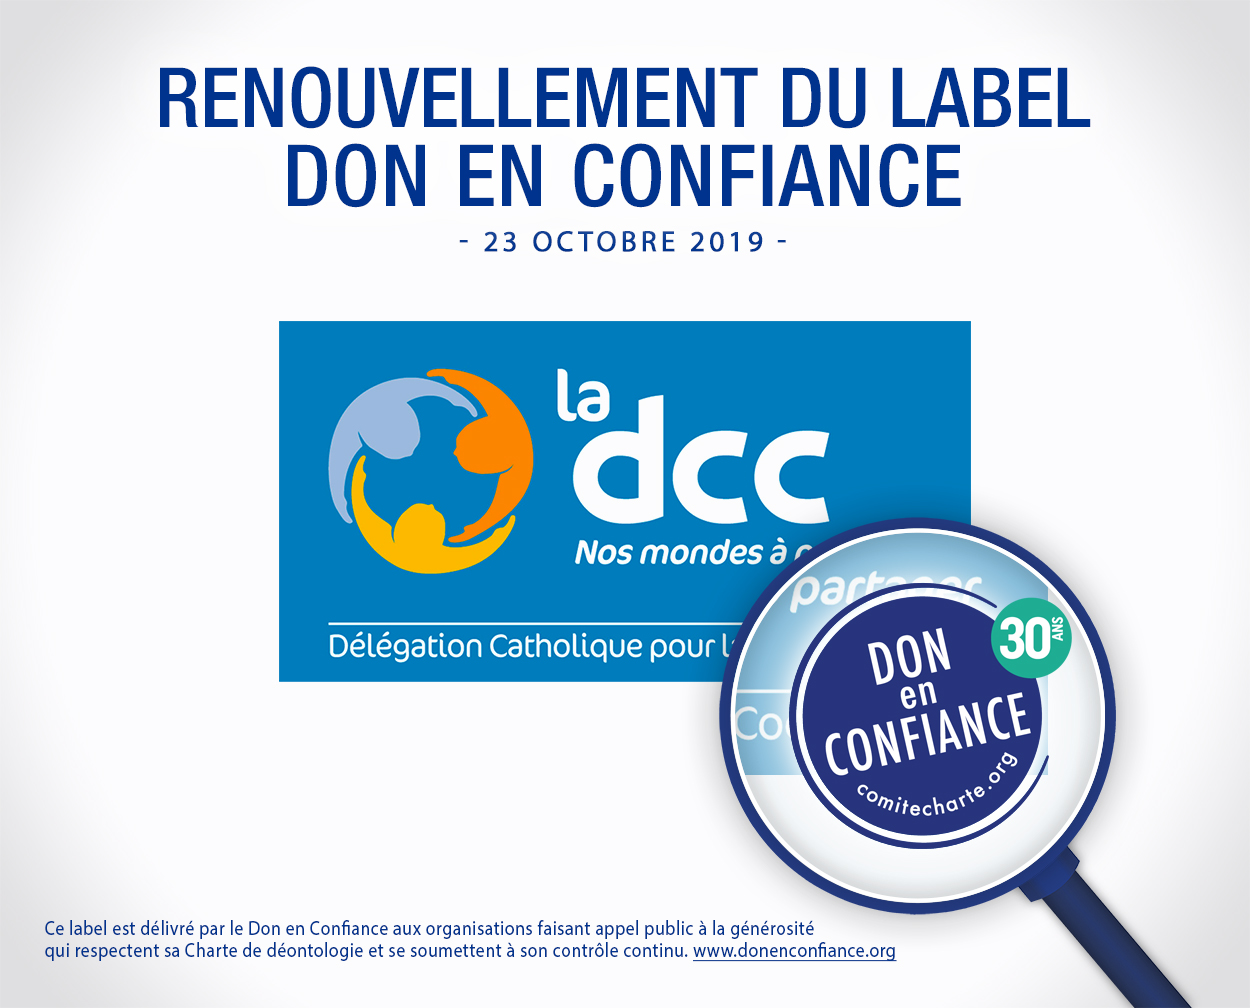 visuel_renouvellement_label_DCC_23102019